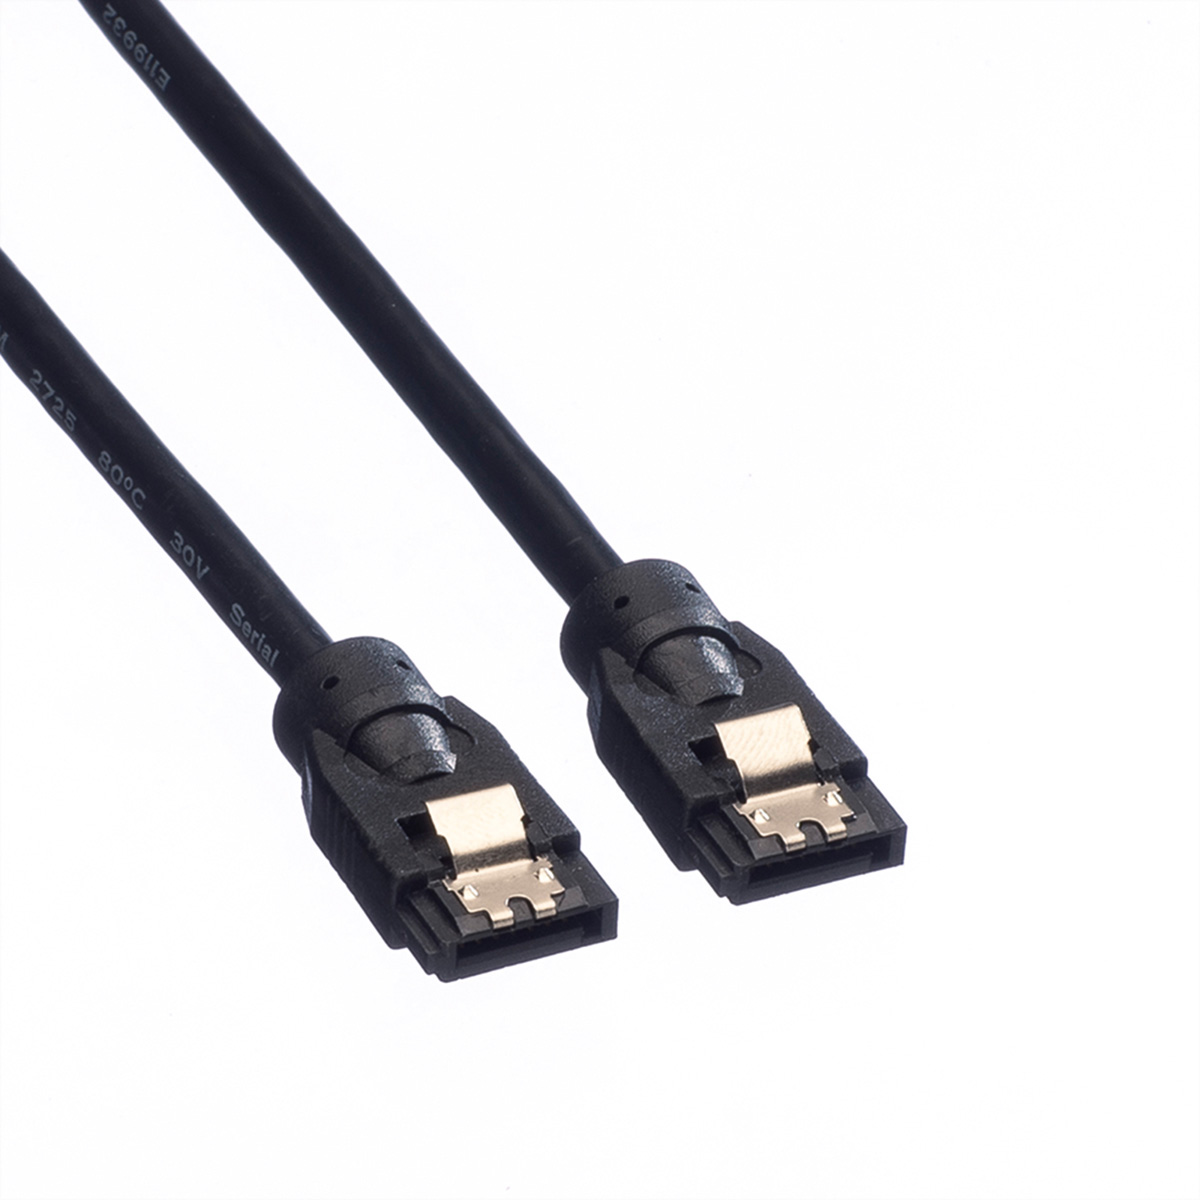 6.0 mit SATA-Kabel, 0,5 HDD-Kabel SATA Internes ROLINE m Schnappverschluss, Gbit/s